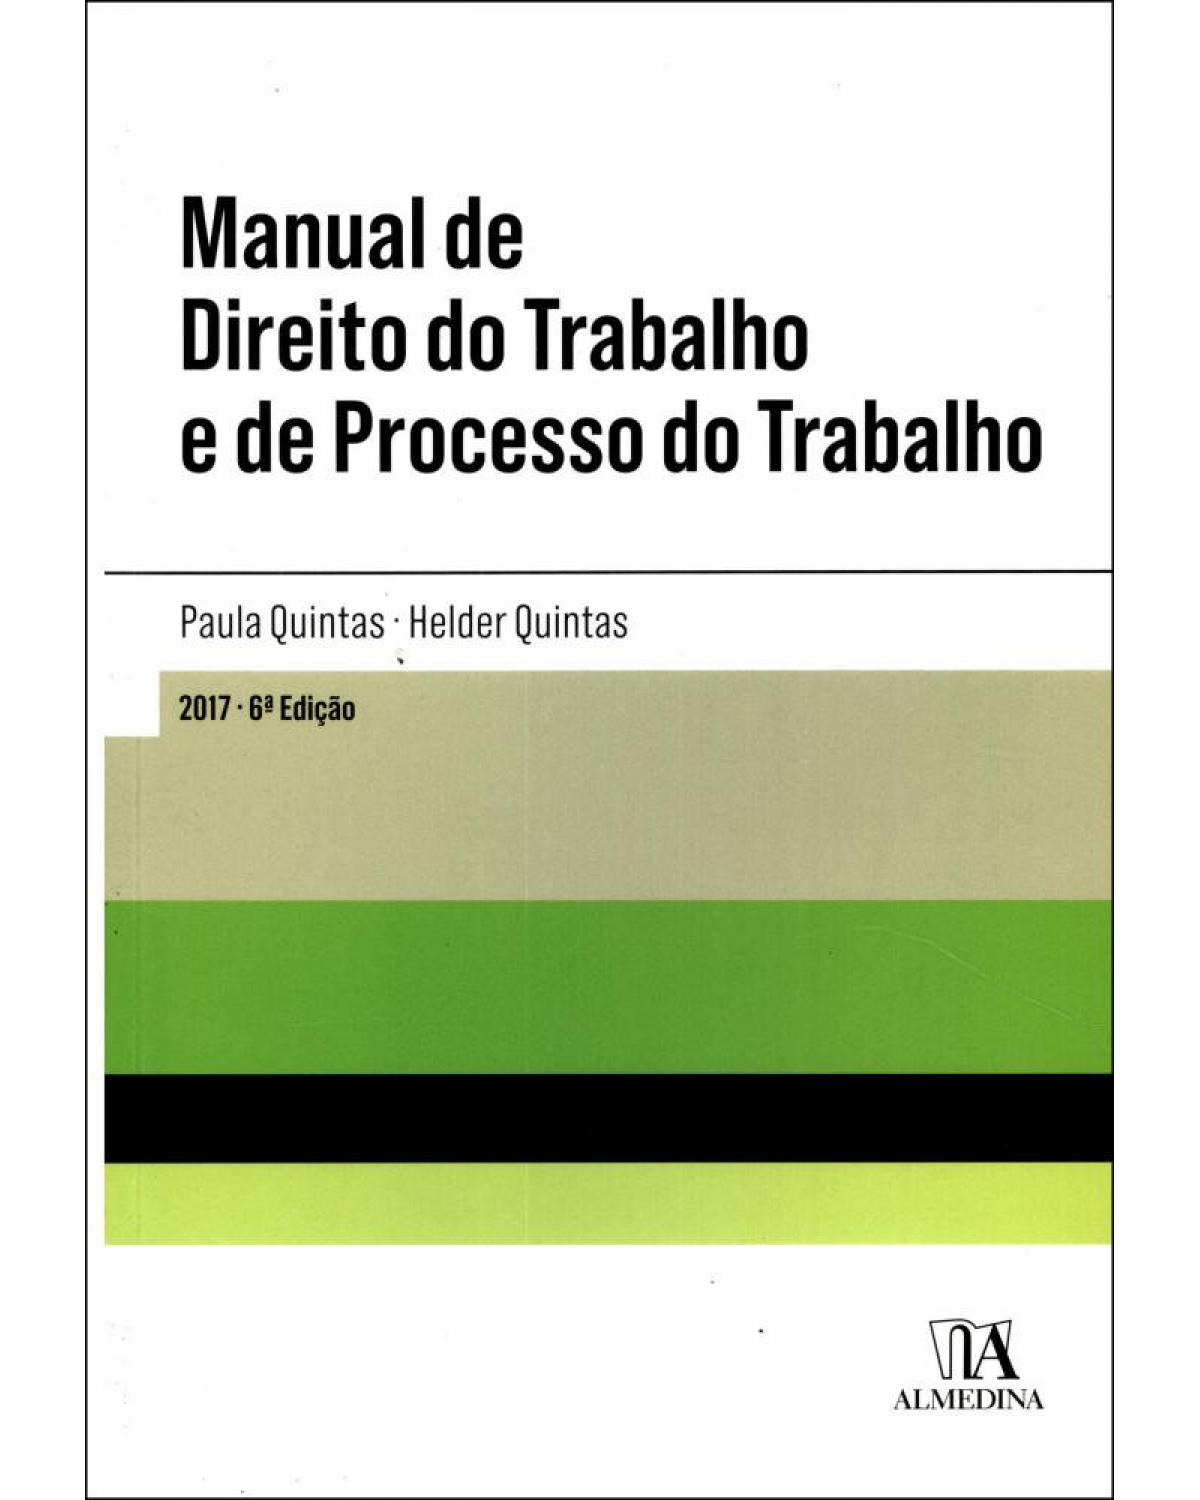 Manual de direito do trabalho e de processo do trabalho - 6ª Edição | 2017